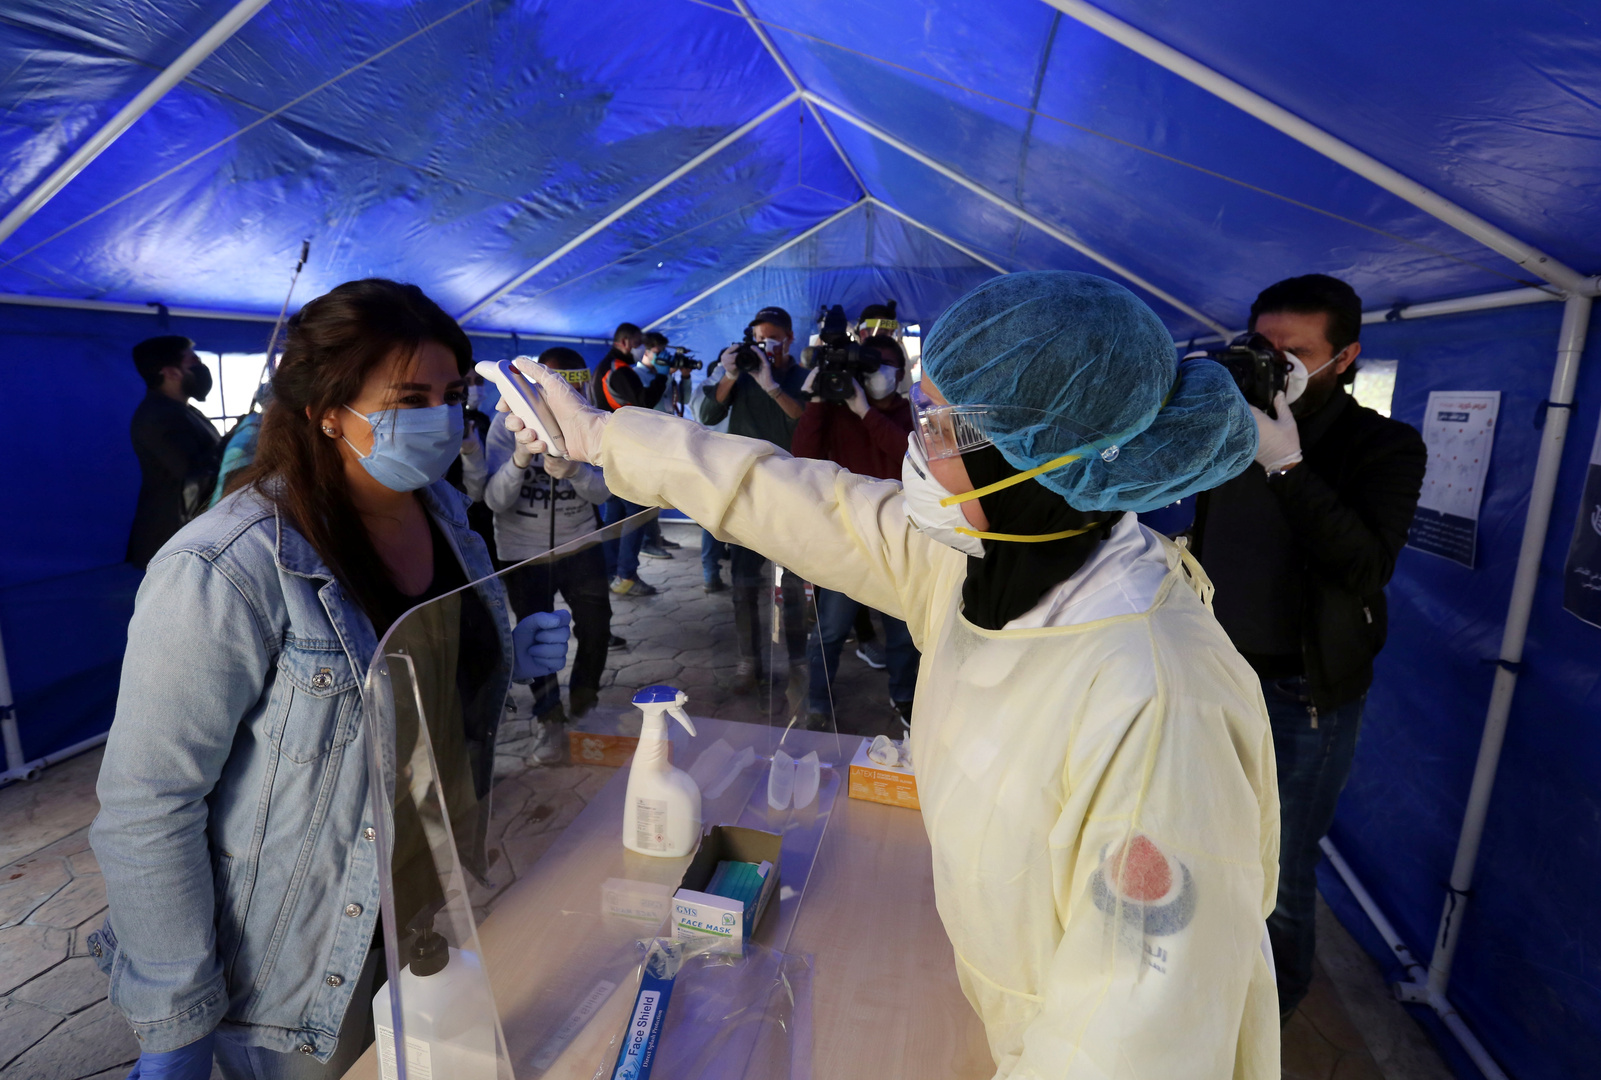 لبنان: تسجيل 15 إصابة جديدة بفيروس كورونا وارتفاع عدد المصابين إلى 494